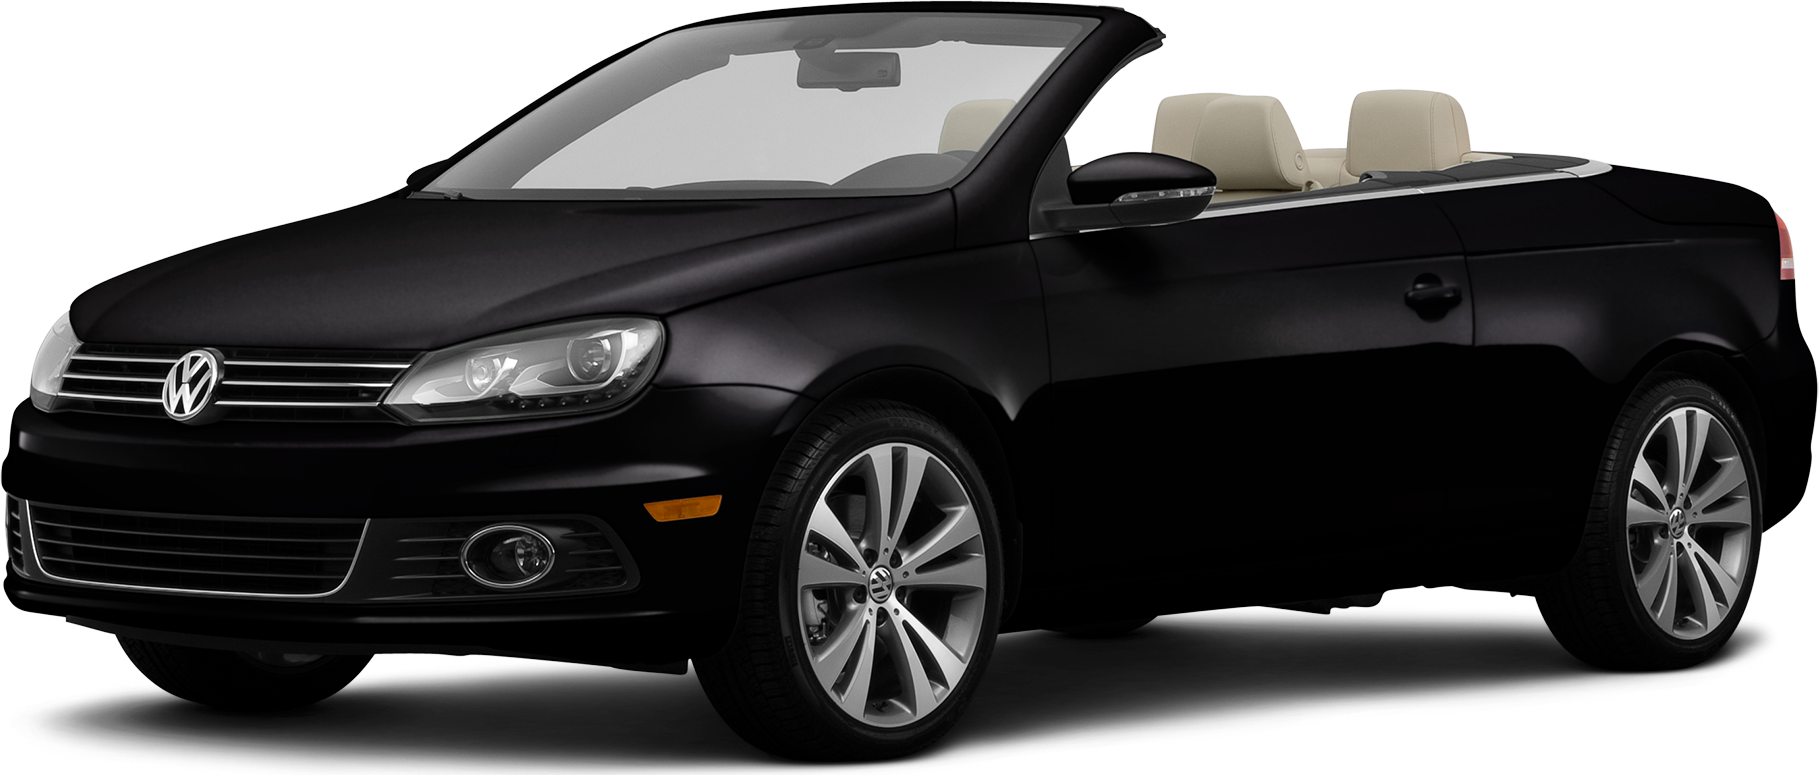 2013 Volkswagen Beetle Price, Value, Ratings & Reviews